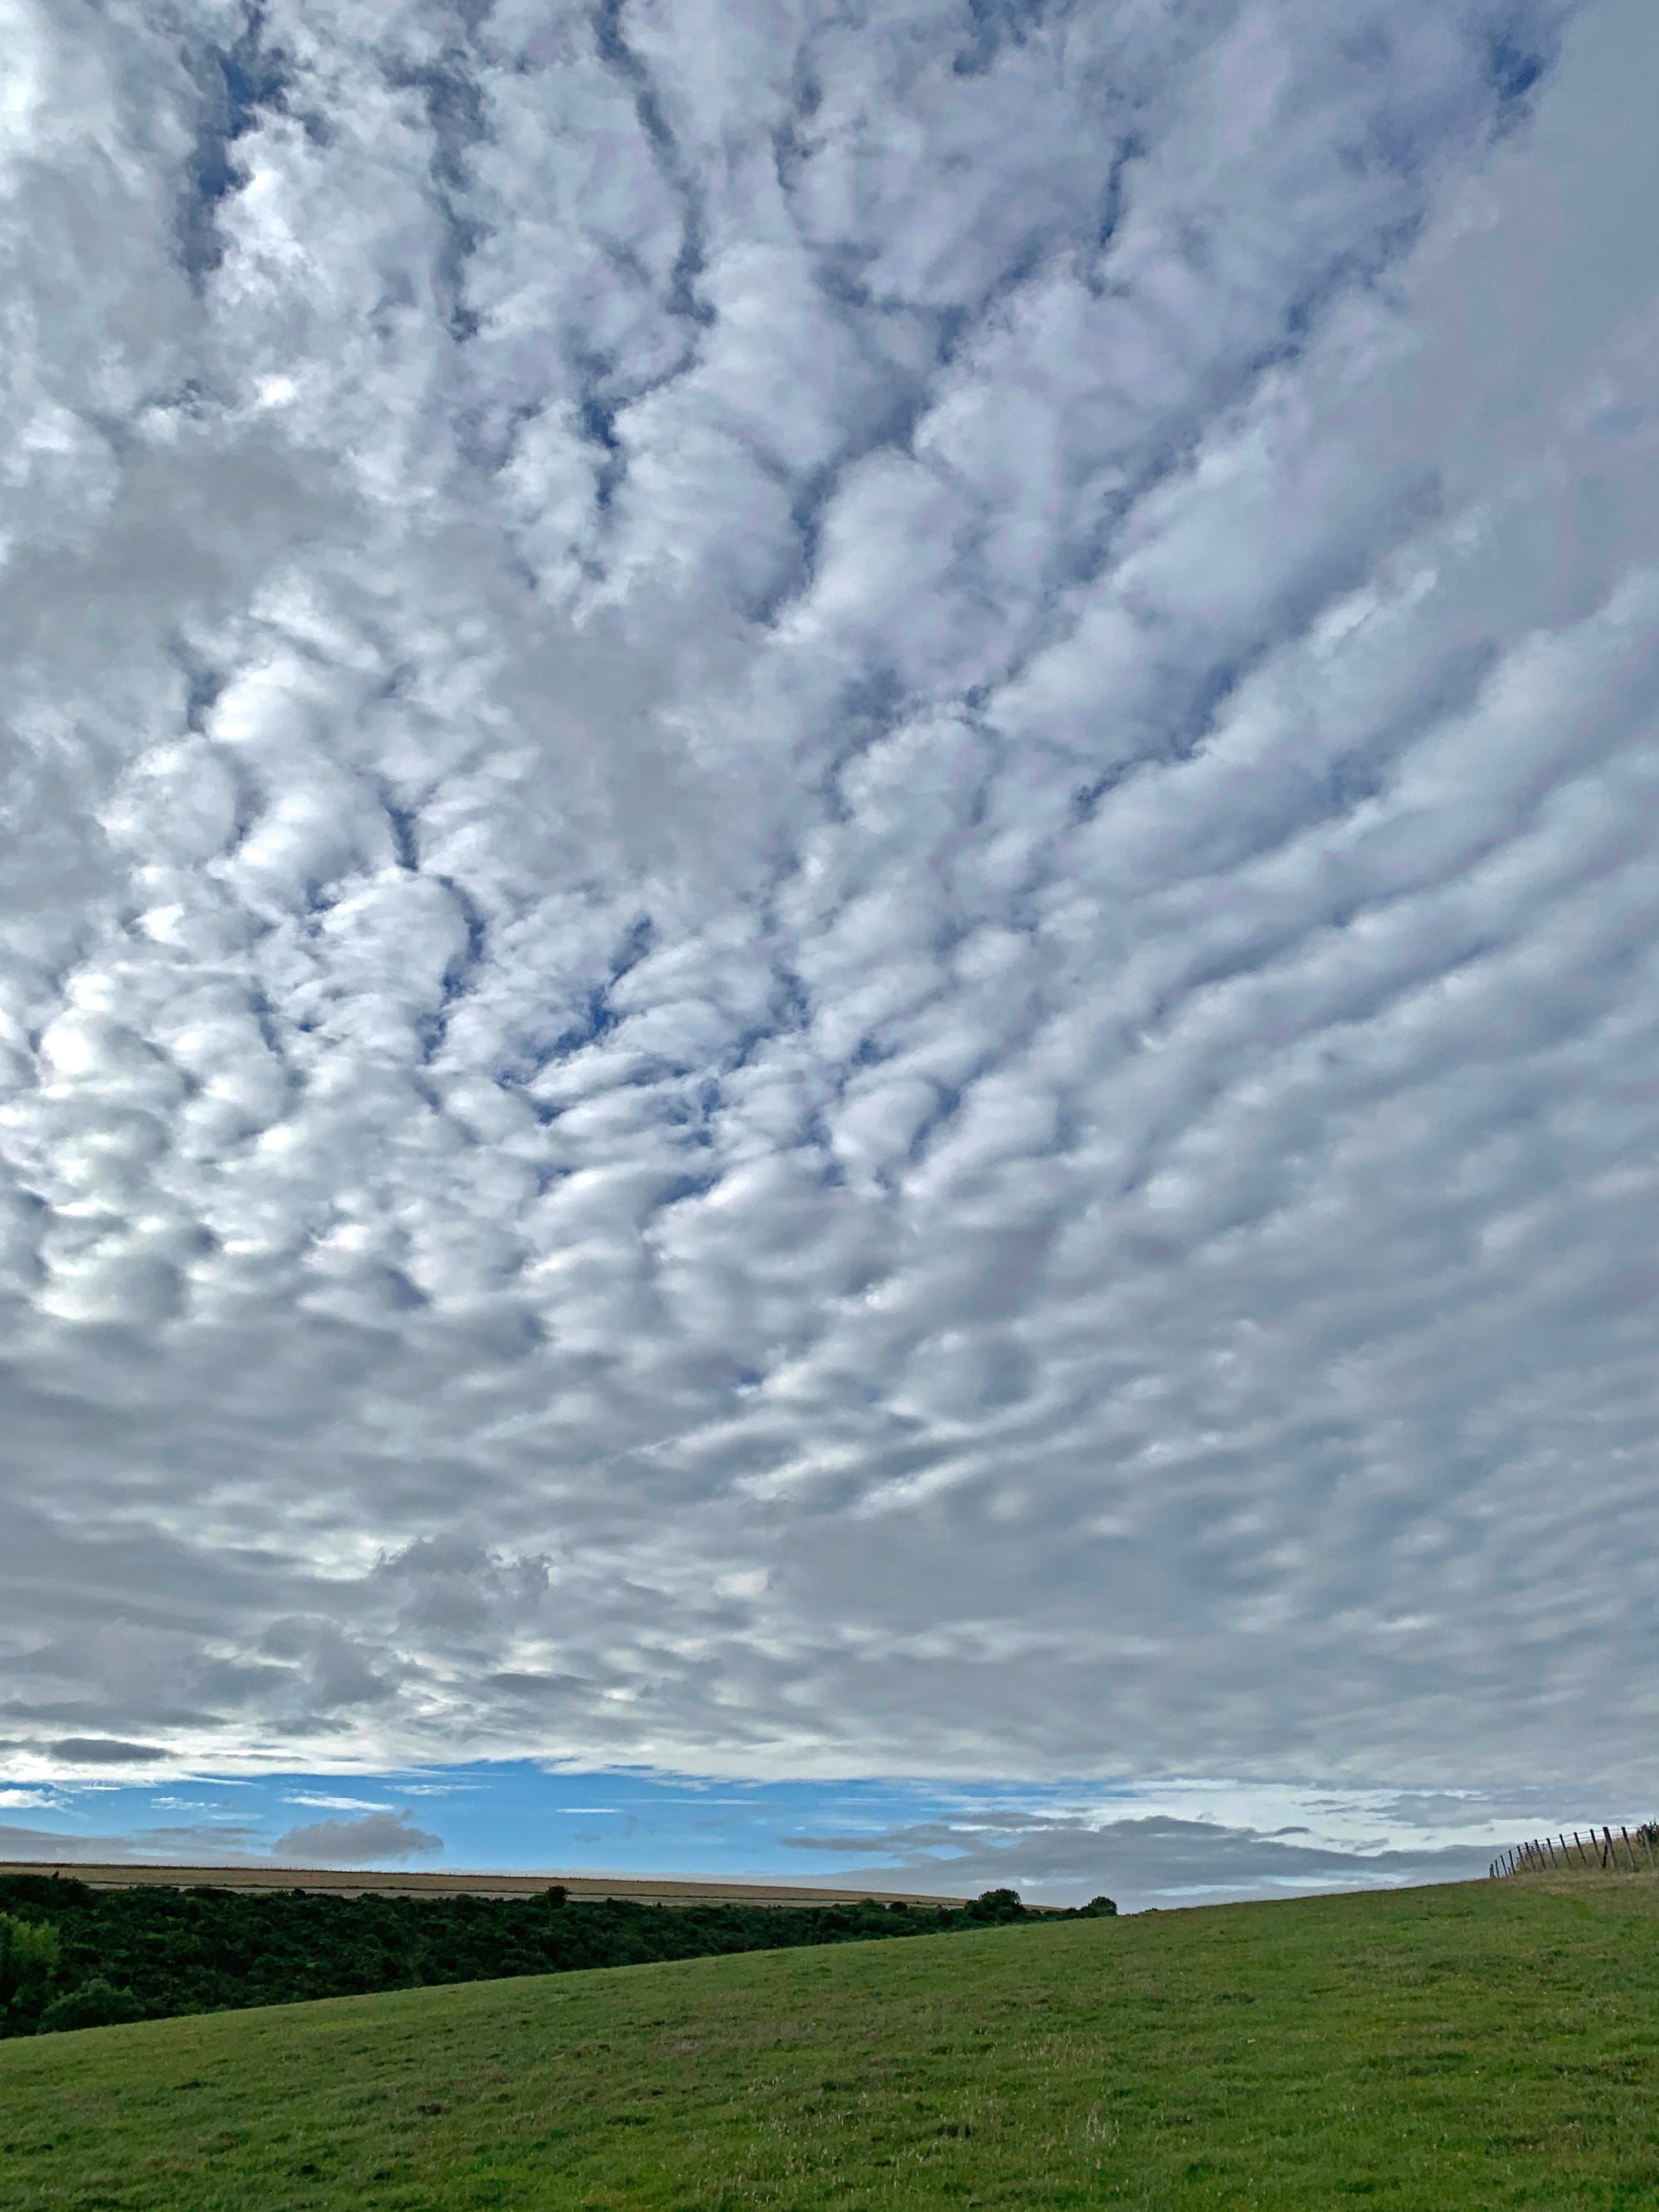 Mackerel Sky, Beddingham, East Sussex